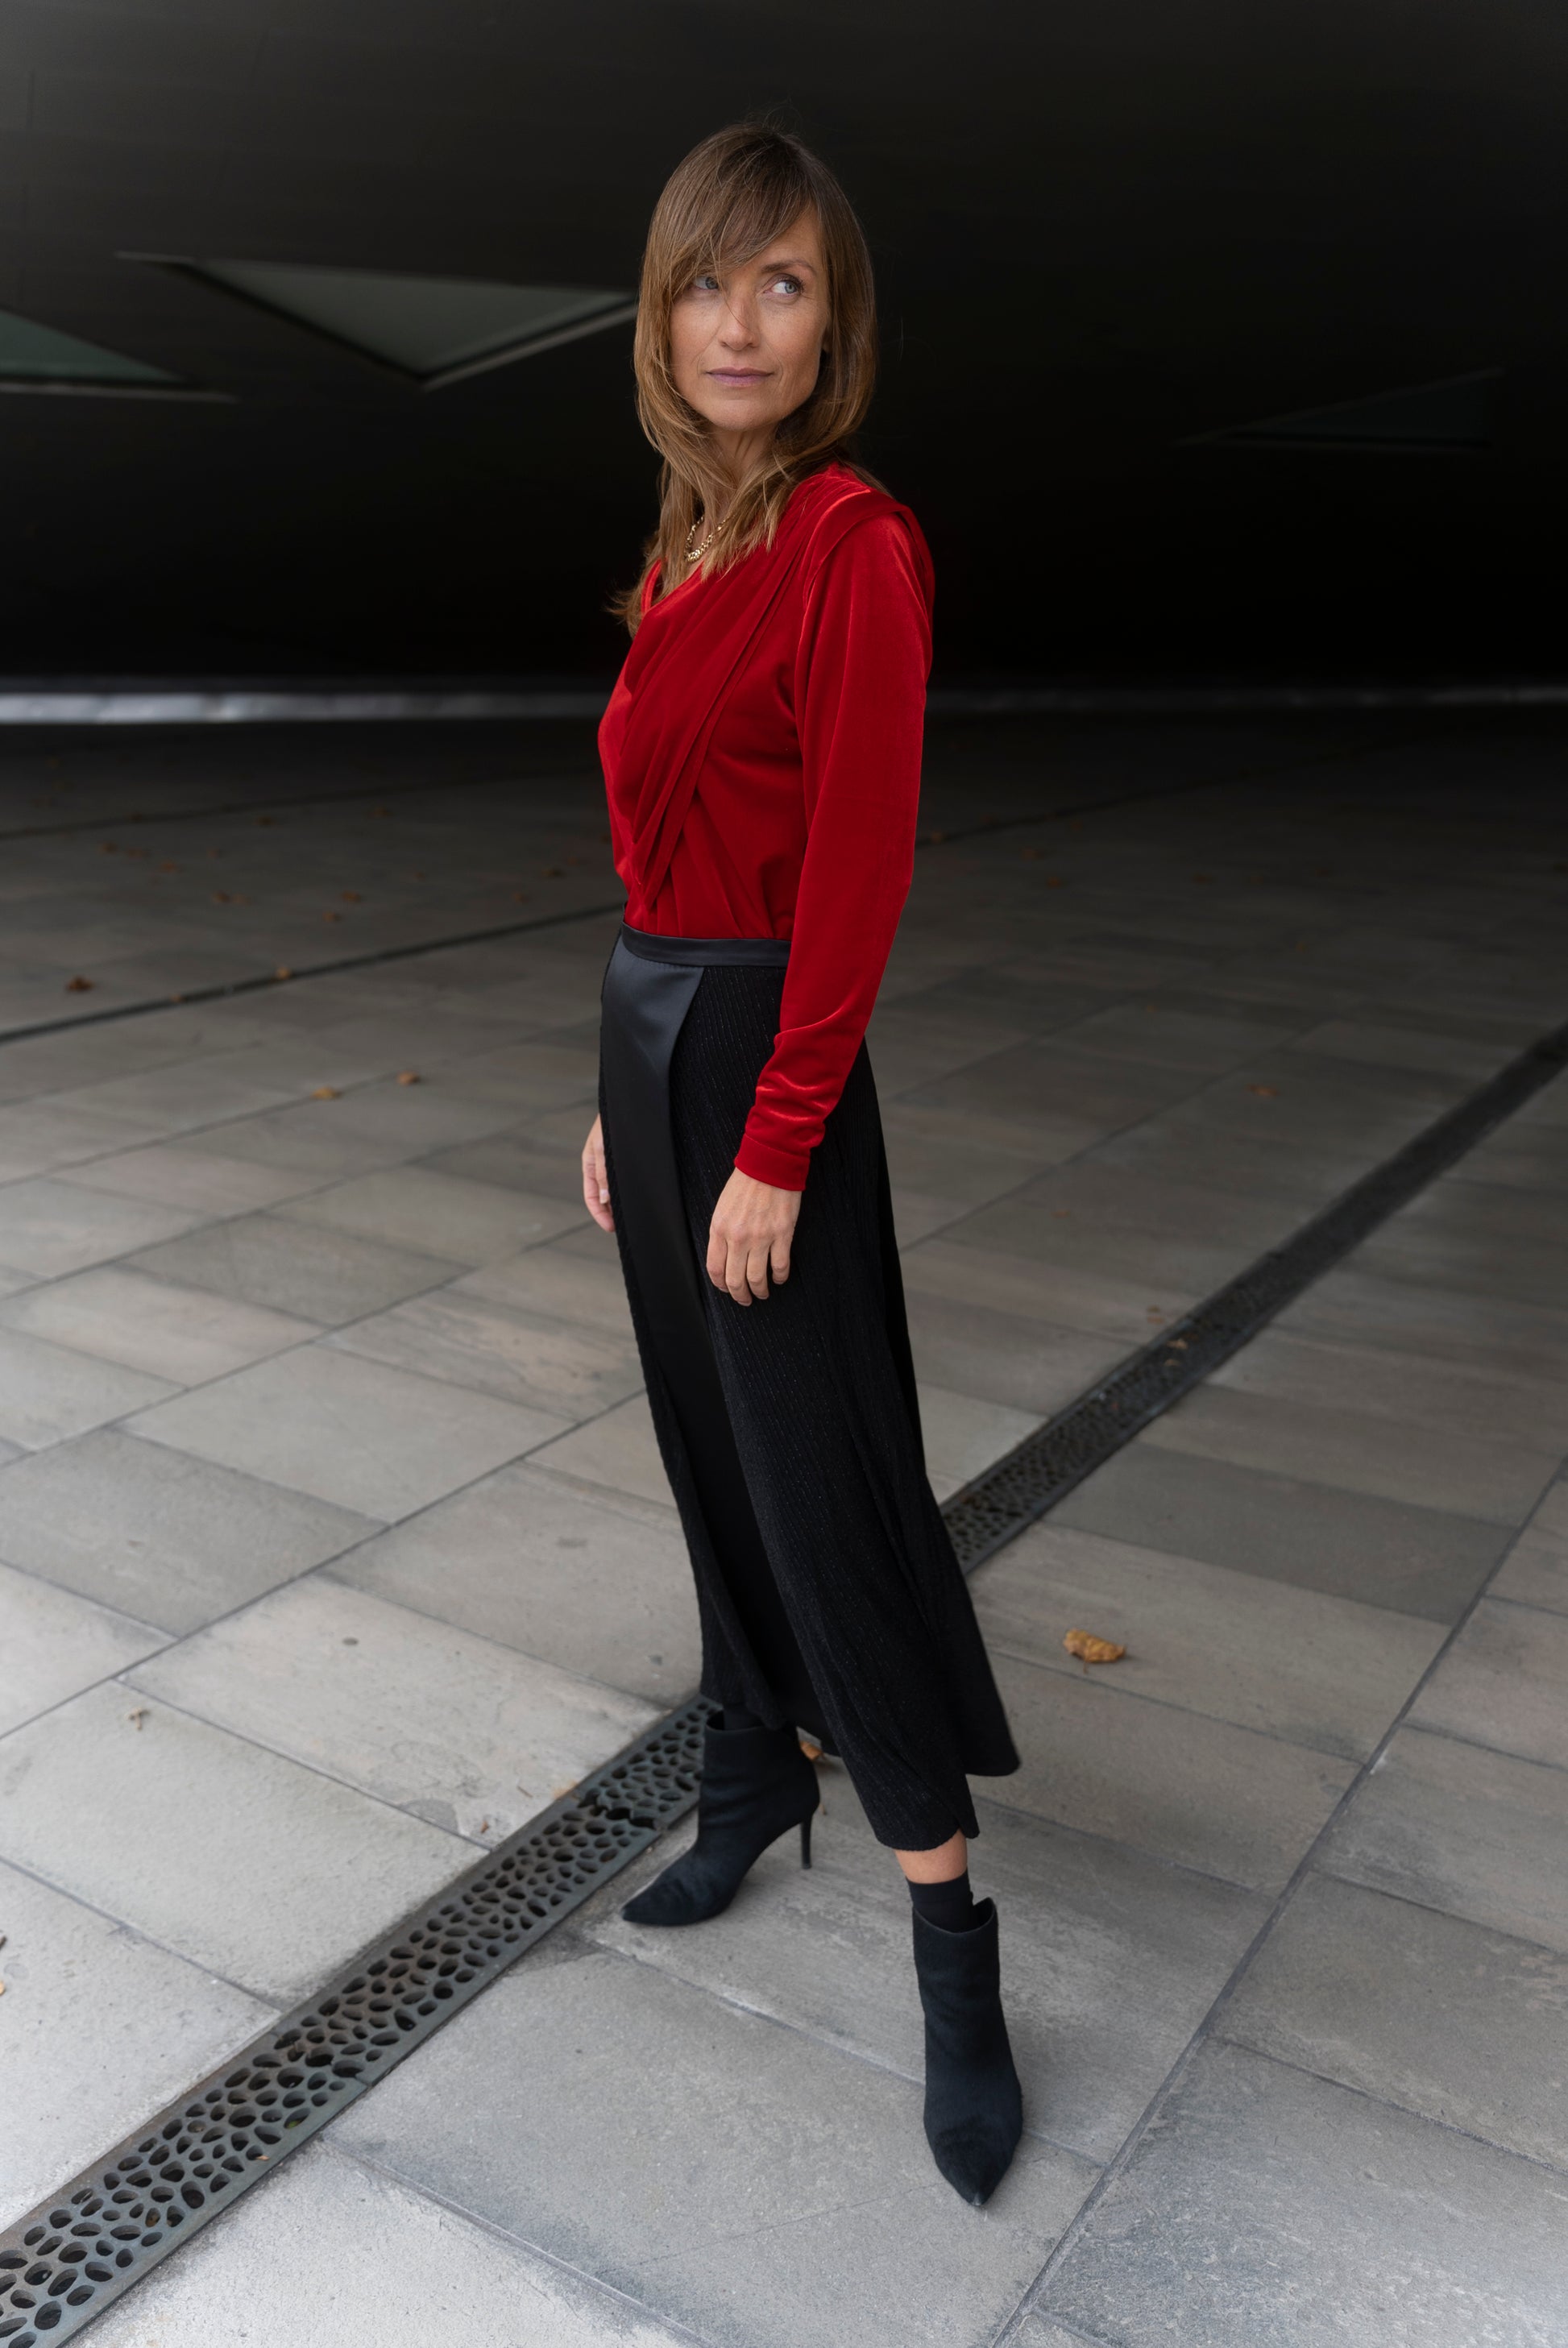 Model wearing Alek top red velvet and Aya skirt stripey black full length. Under geometric building.